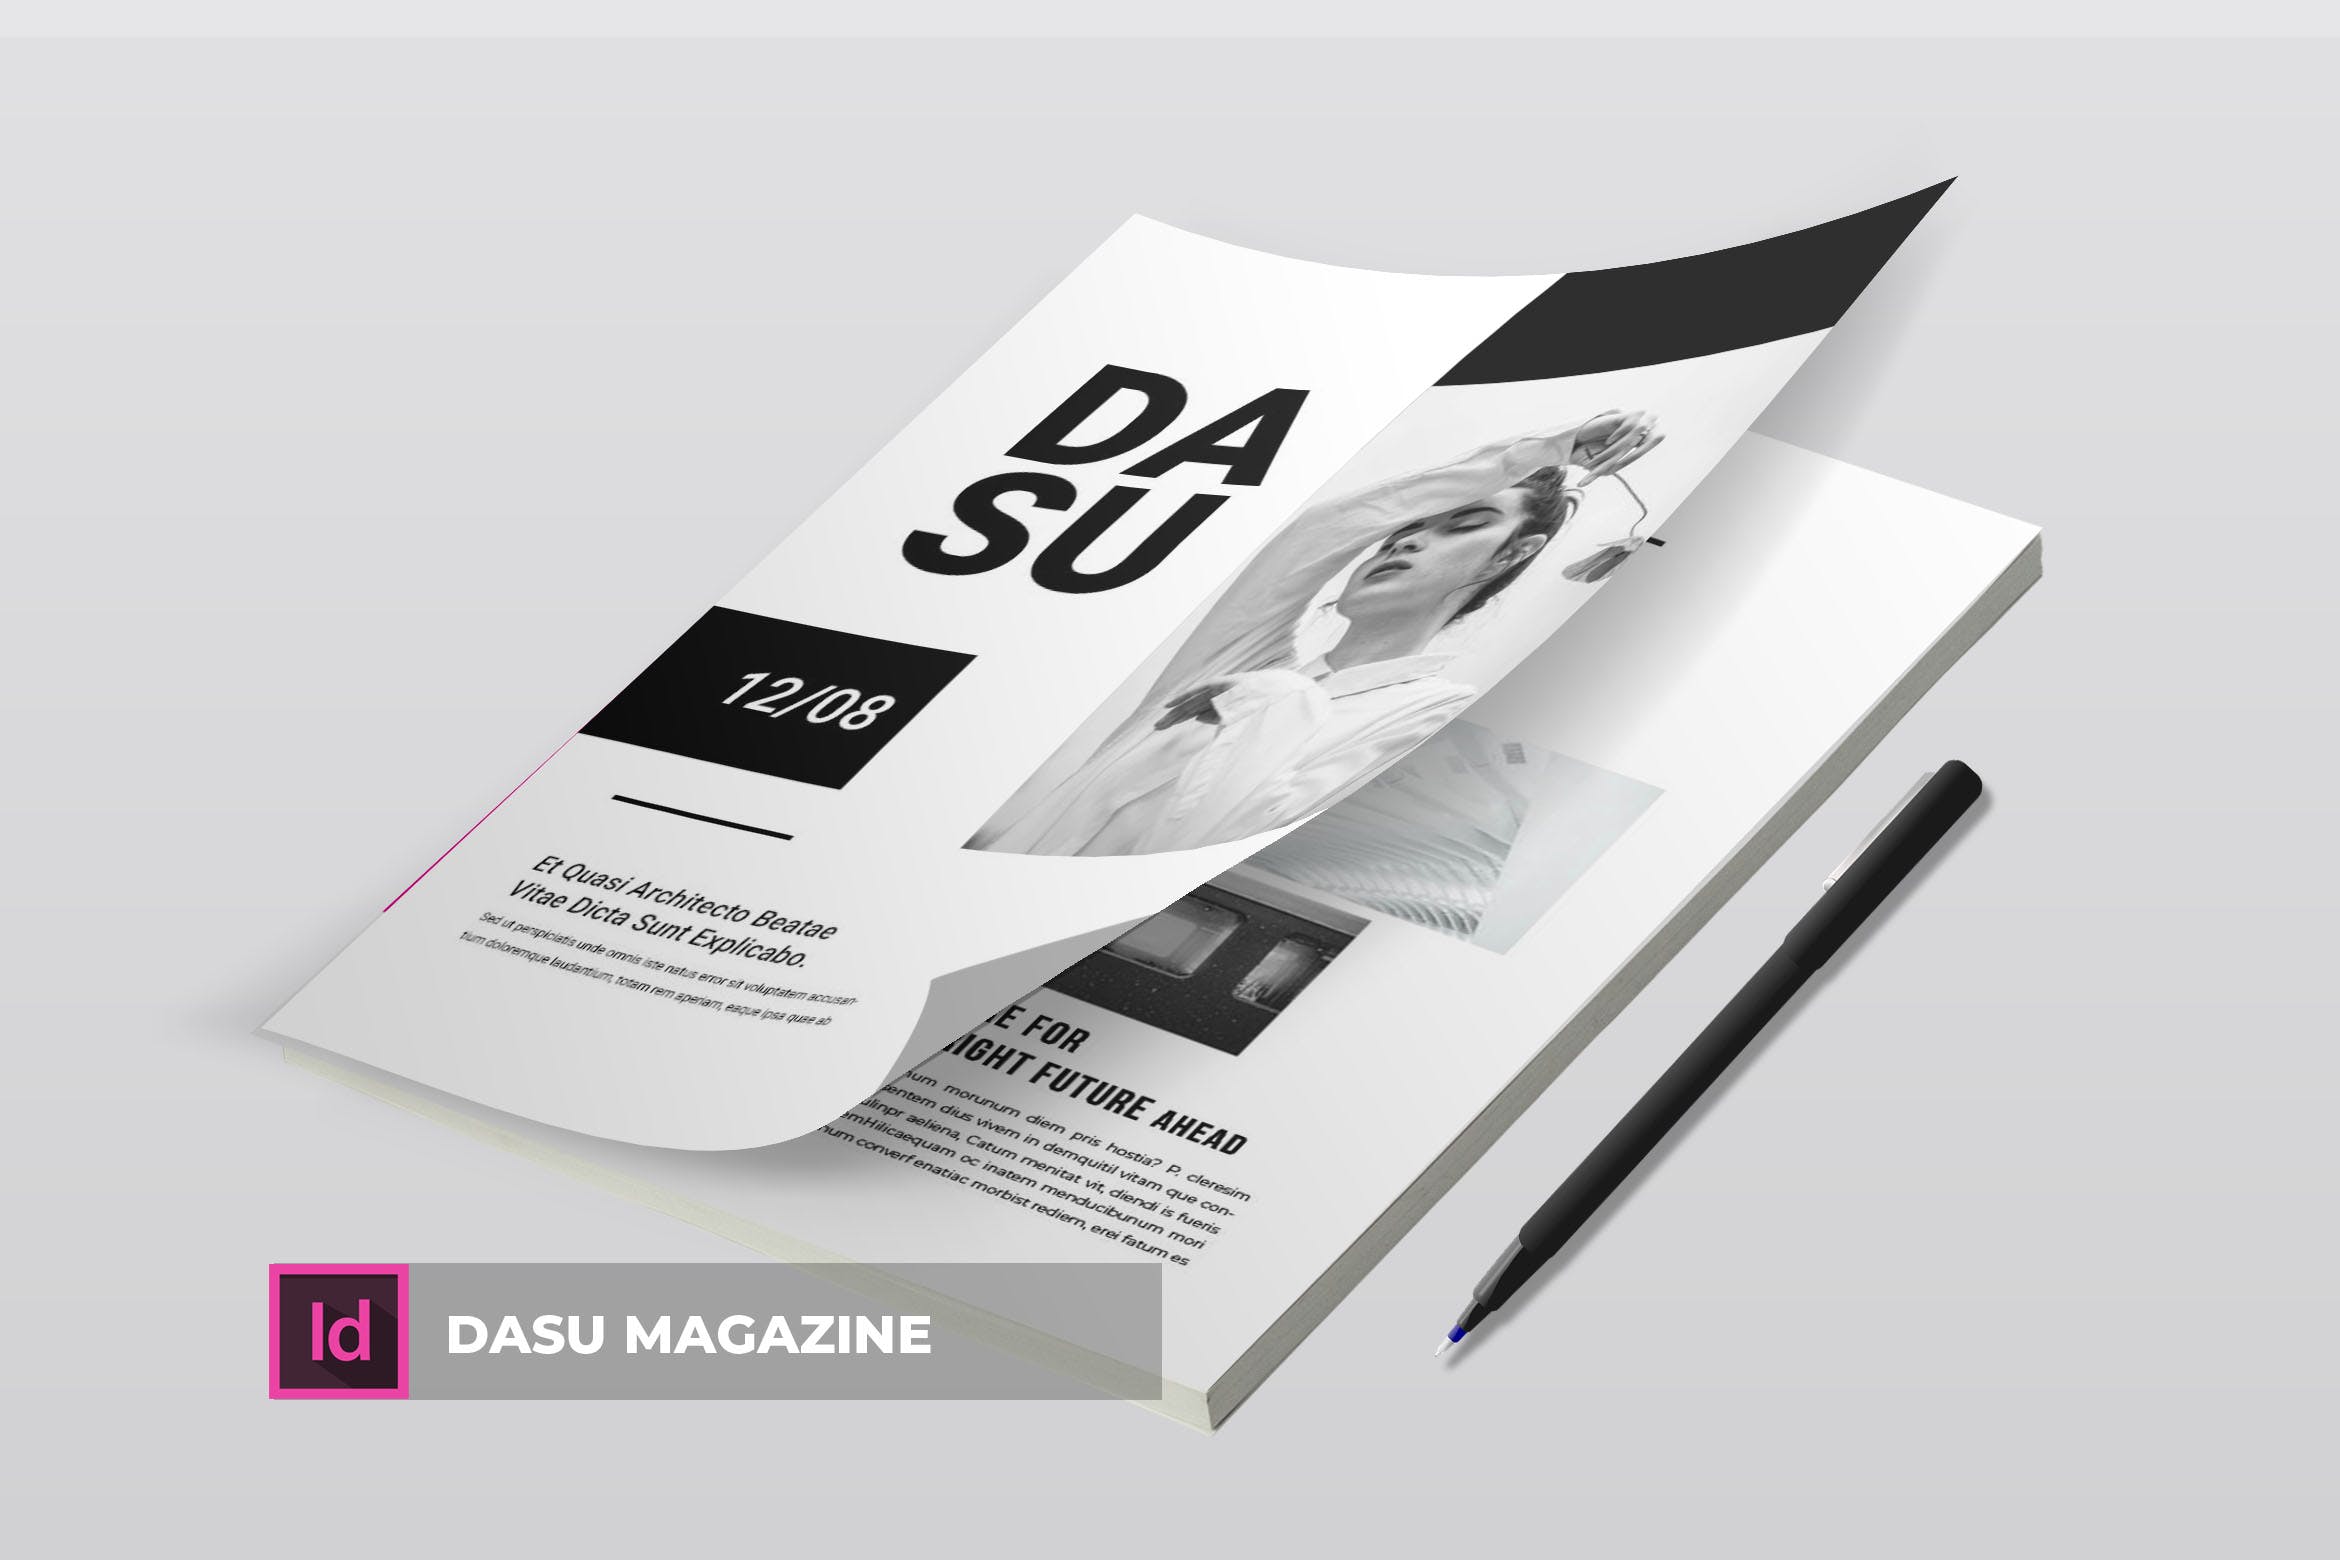 摄影艺术/时装设计主题第一素材精选杂志排版设计模板 Dasu | Magazine Template插图